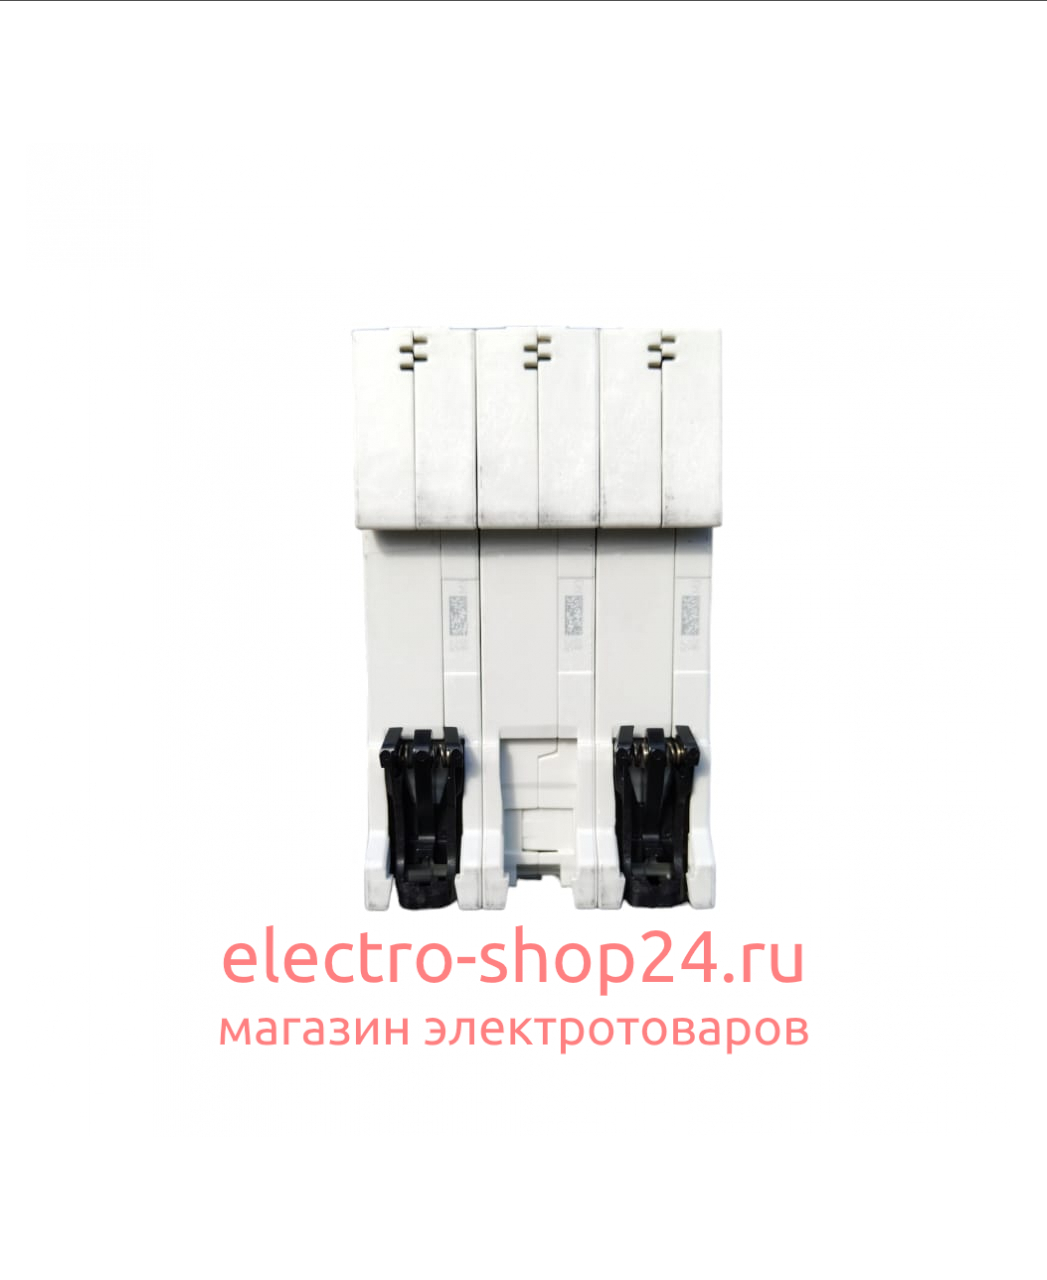 S203 C63 Автоматический выключатель 3-полюсный 63А 6кА (хар-ка C) ABB 2CDS253001R0634 2CDS253001R0634 - магазин электротехники Electroshop